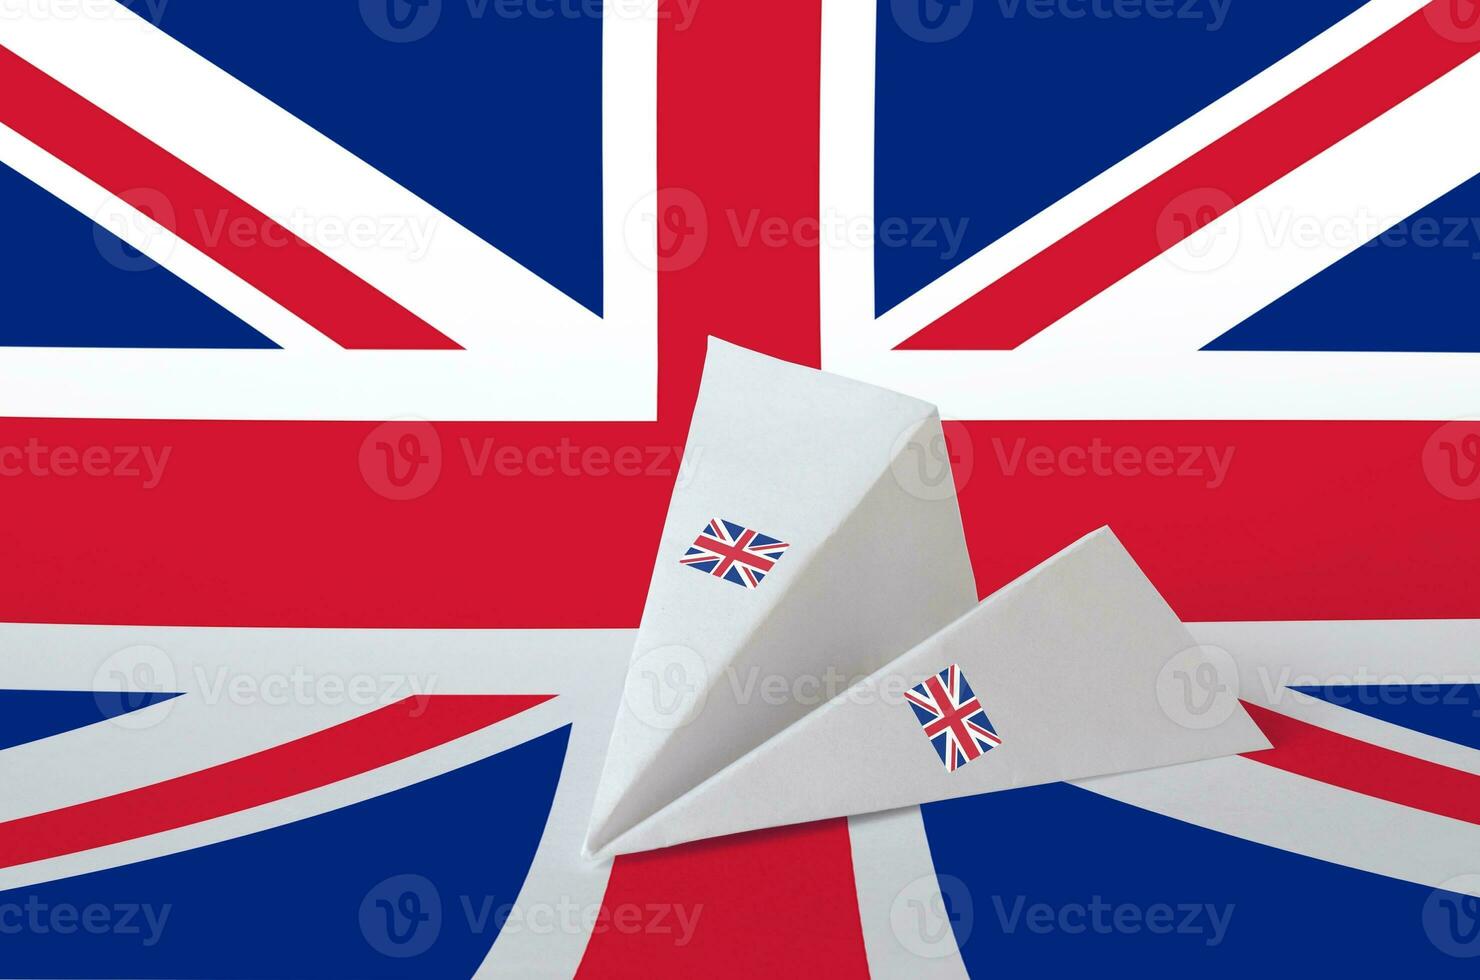 bra storbritannien flagga avbildad på papper origami flygplan. handgjort konst begrepp foto